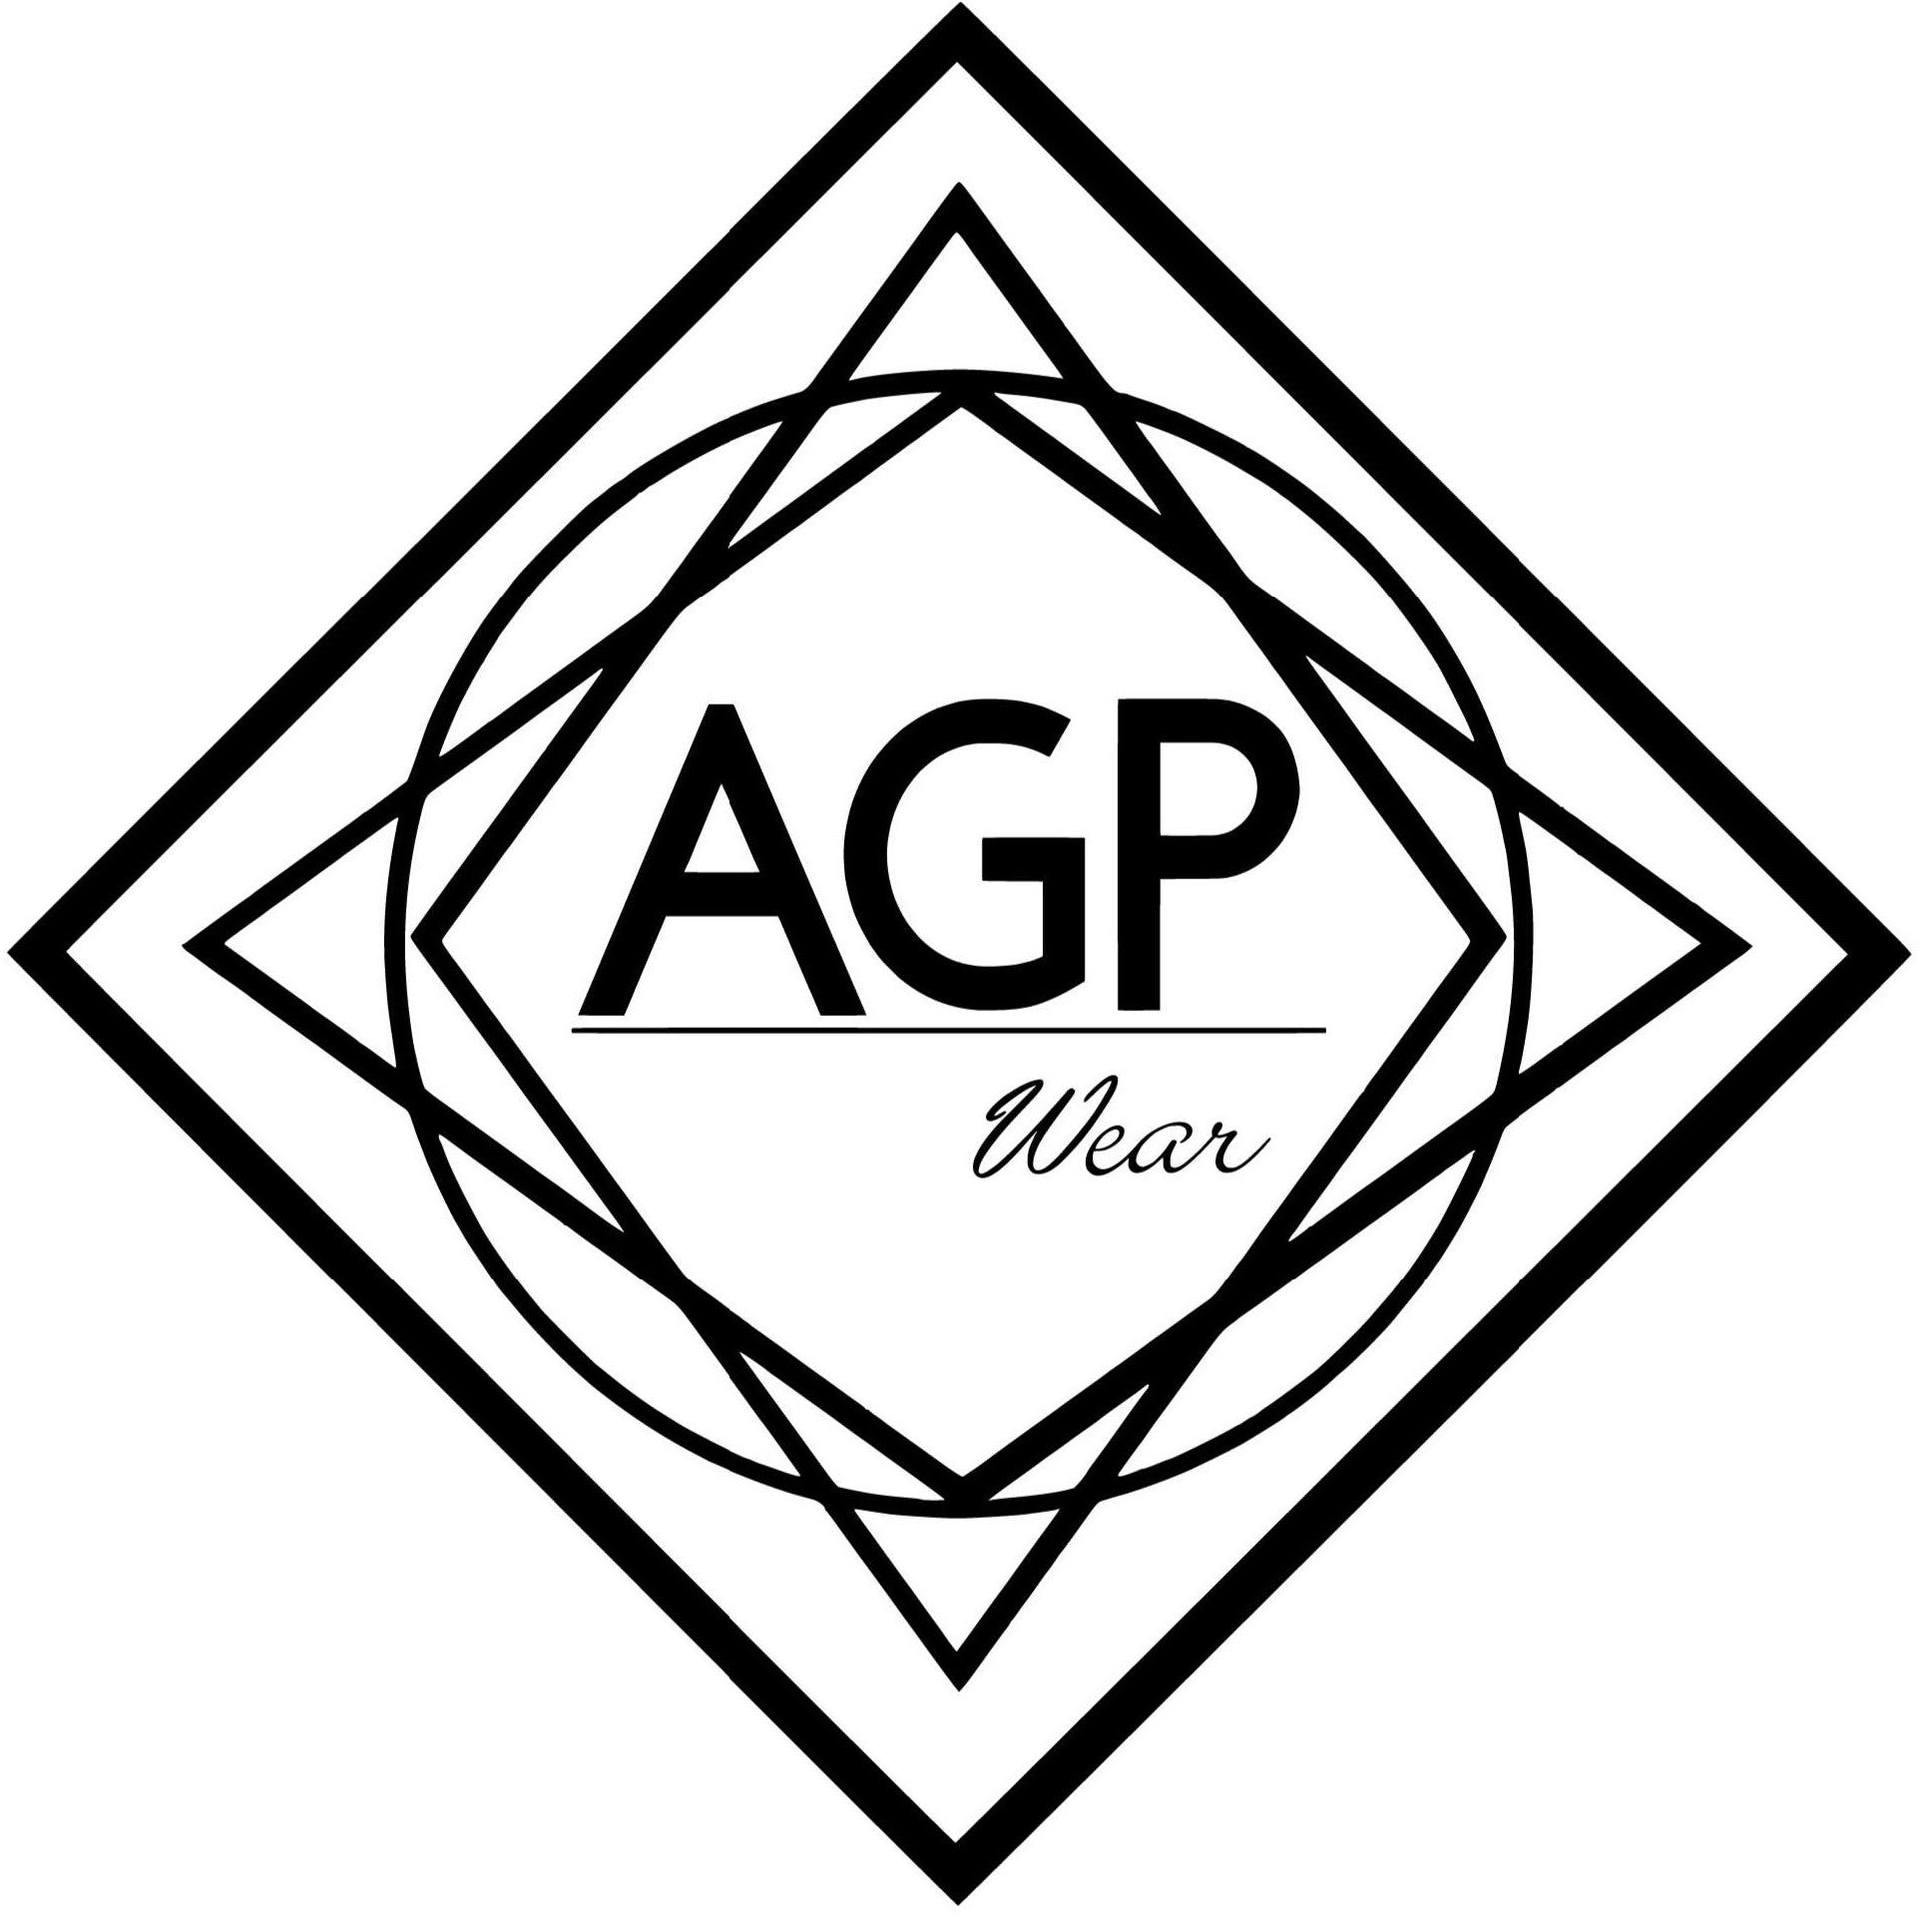 AGP Wear